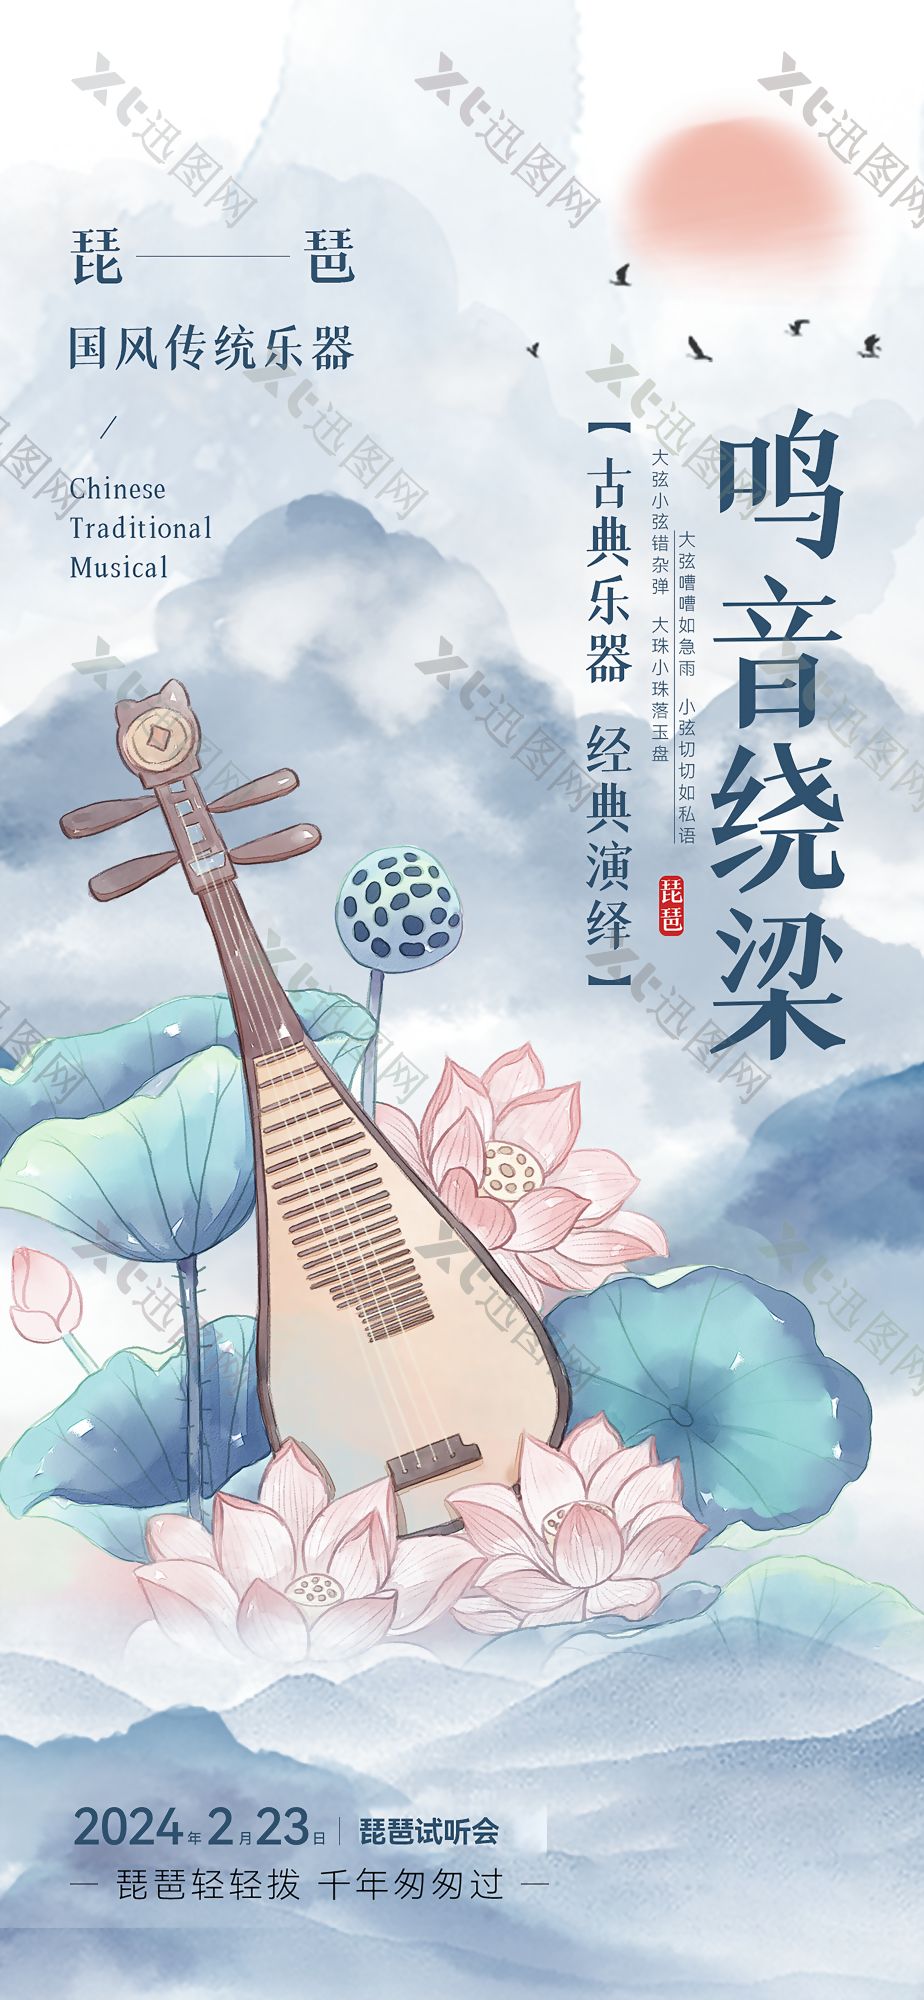 古典国风传统乐器琵琶试听会海报下载